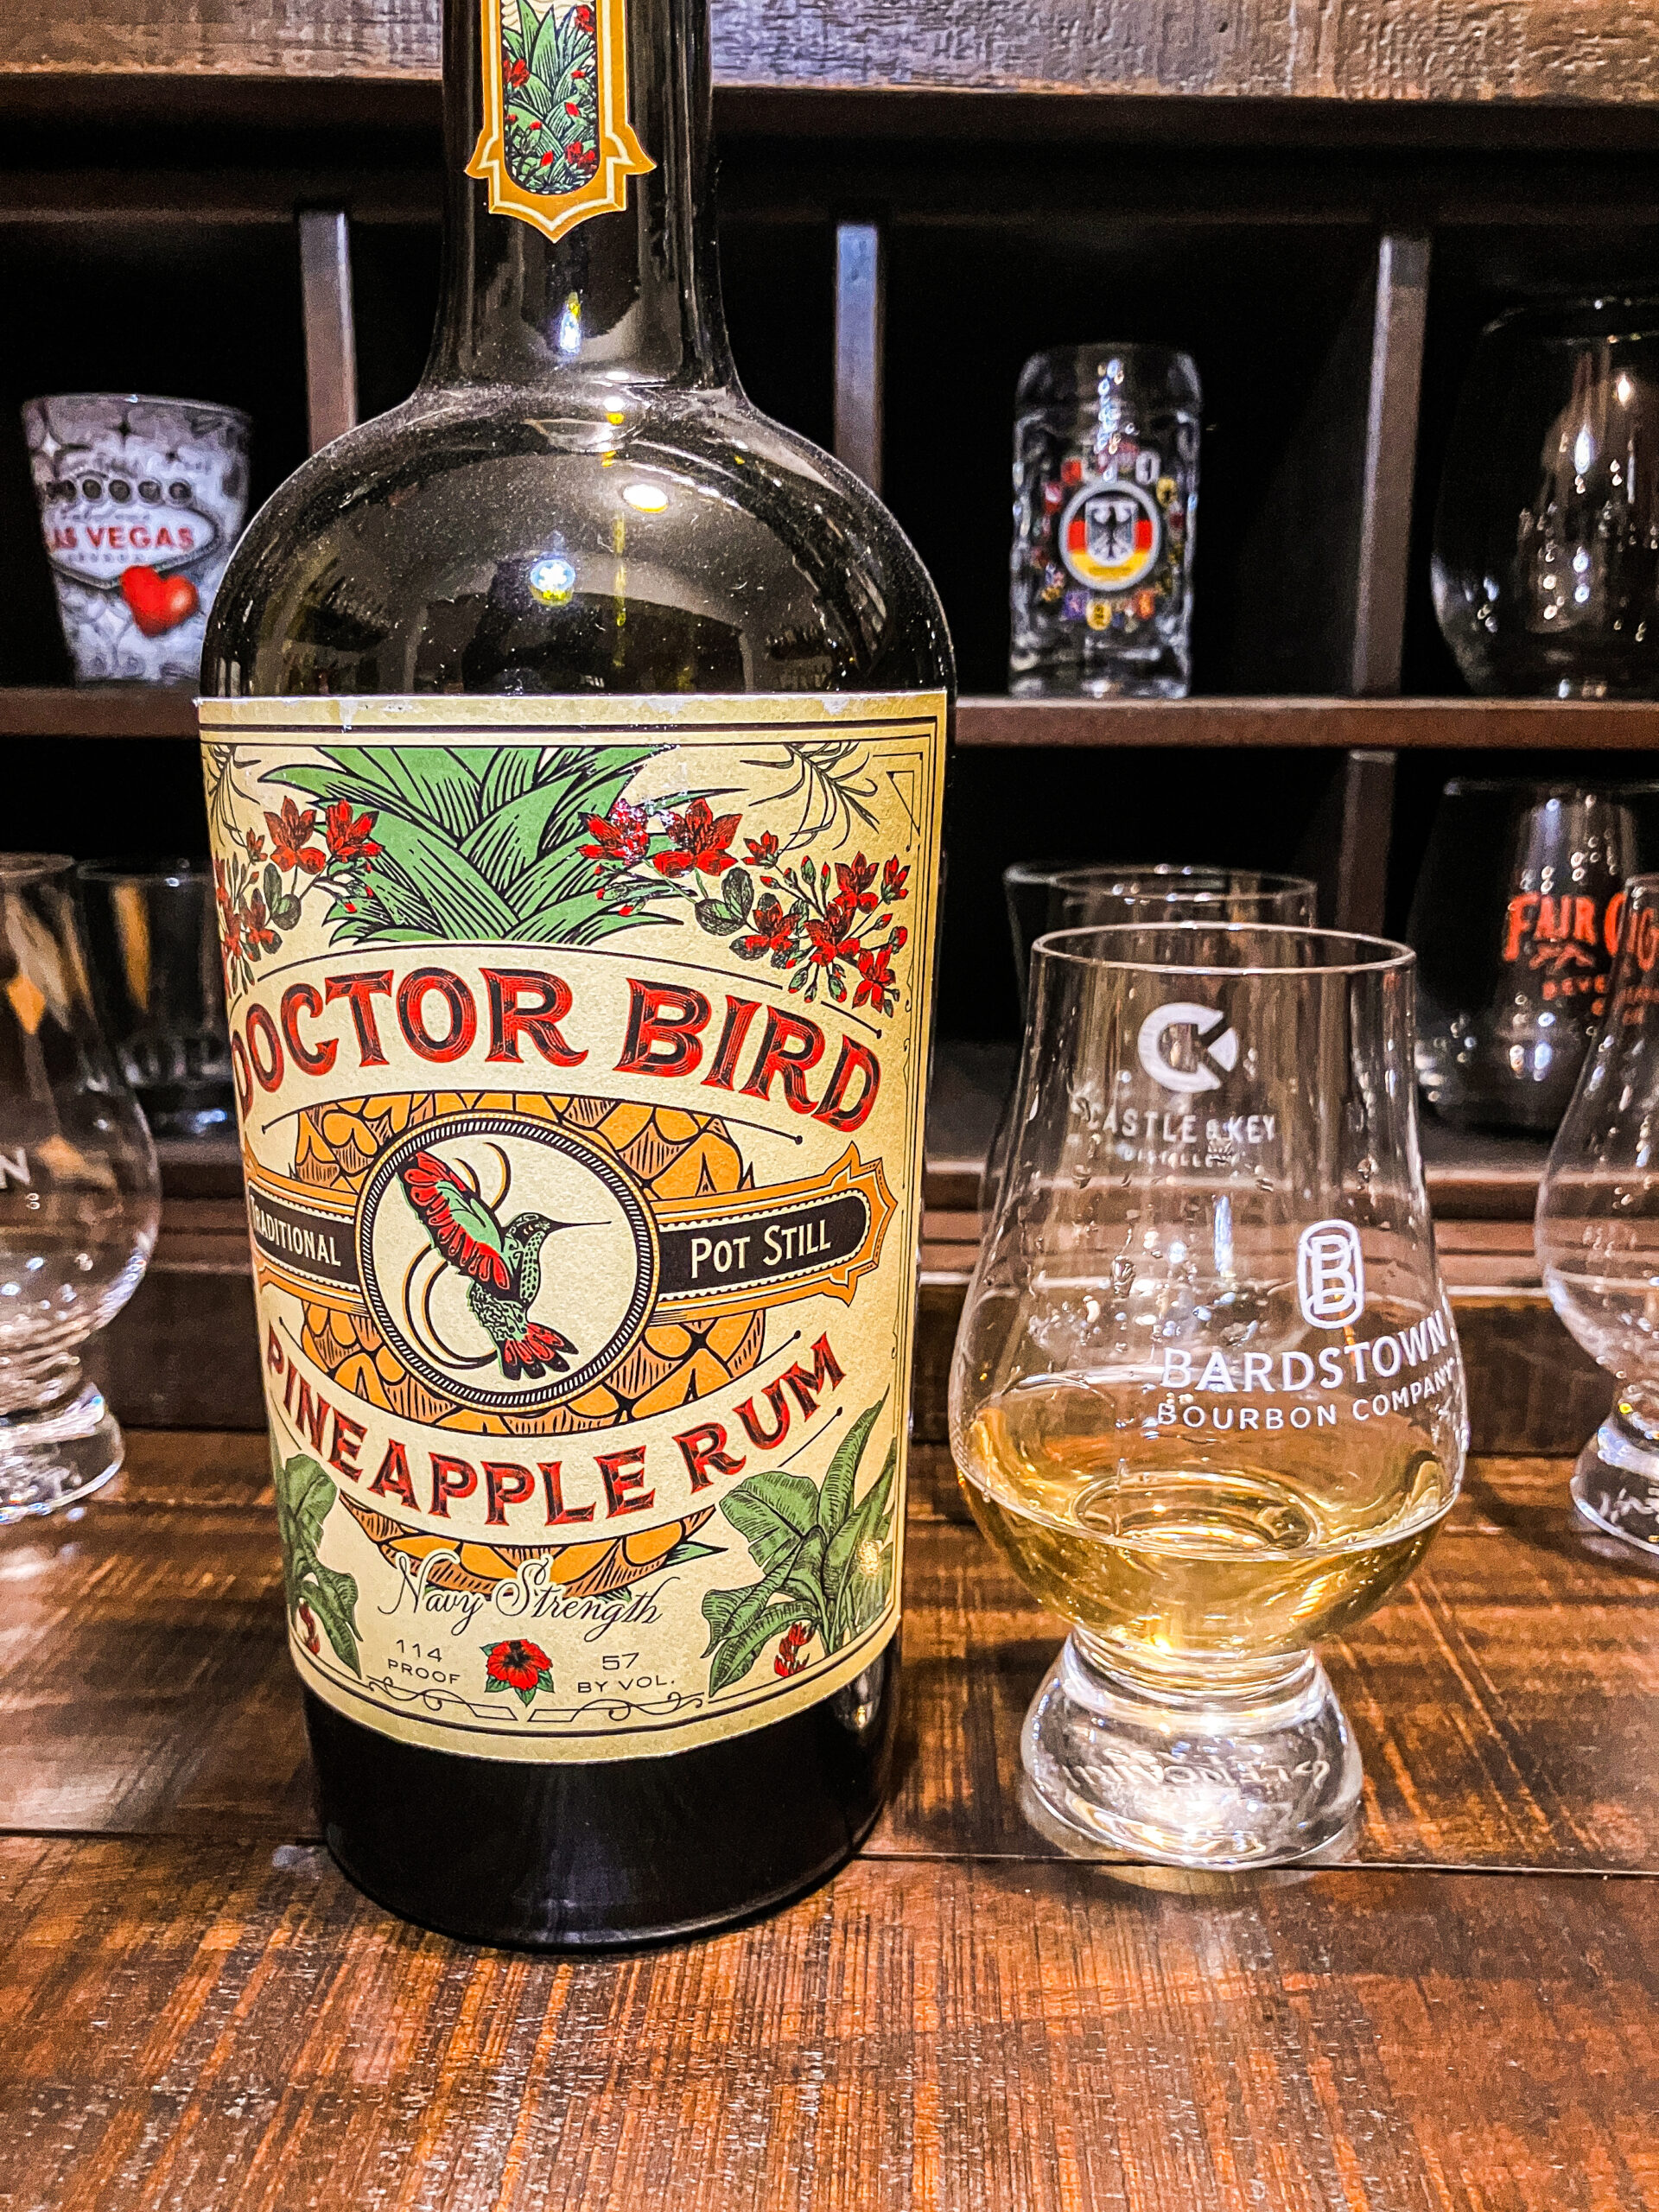 Review #566 – Doctor Bird Pineapple Rum